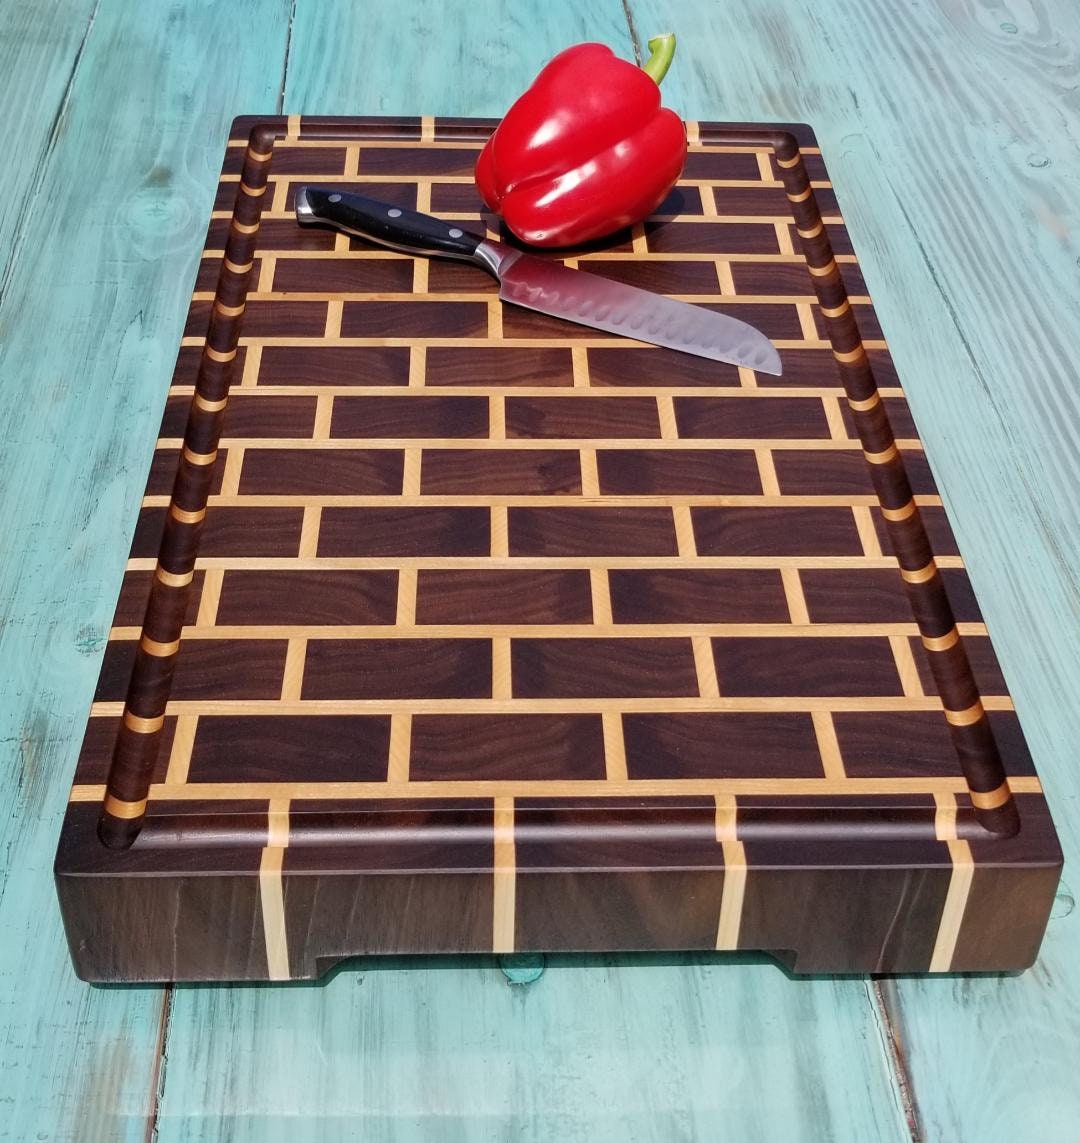 Heirloom Edition - Cherry Brick Wall End Grain Cutting Board (22